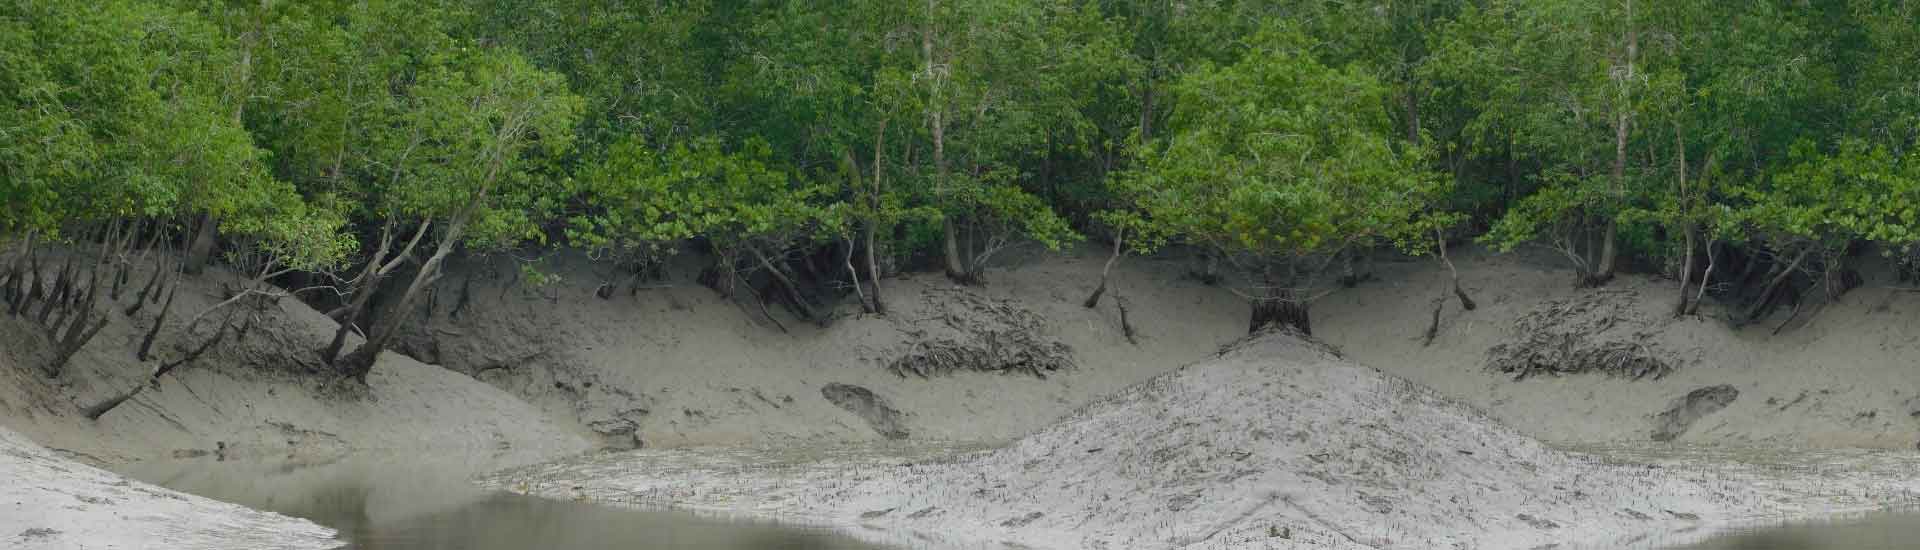 Why Do Children Like Sundarban More?